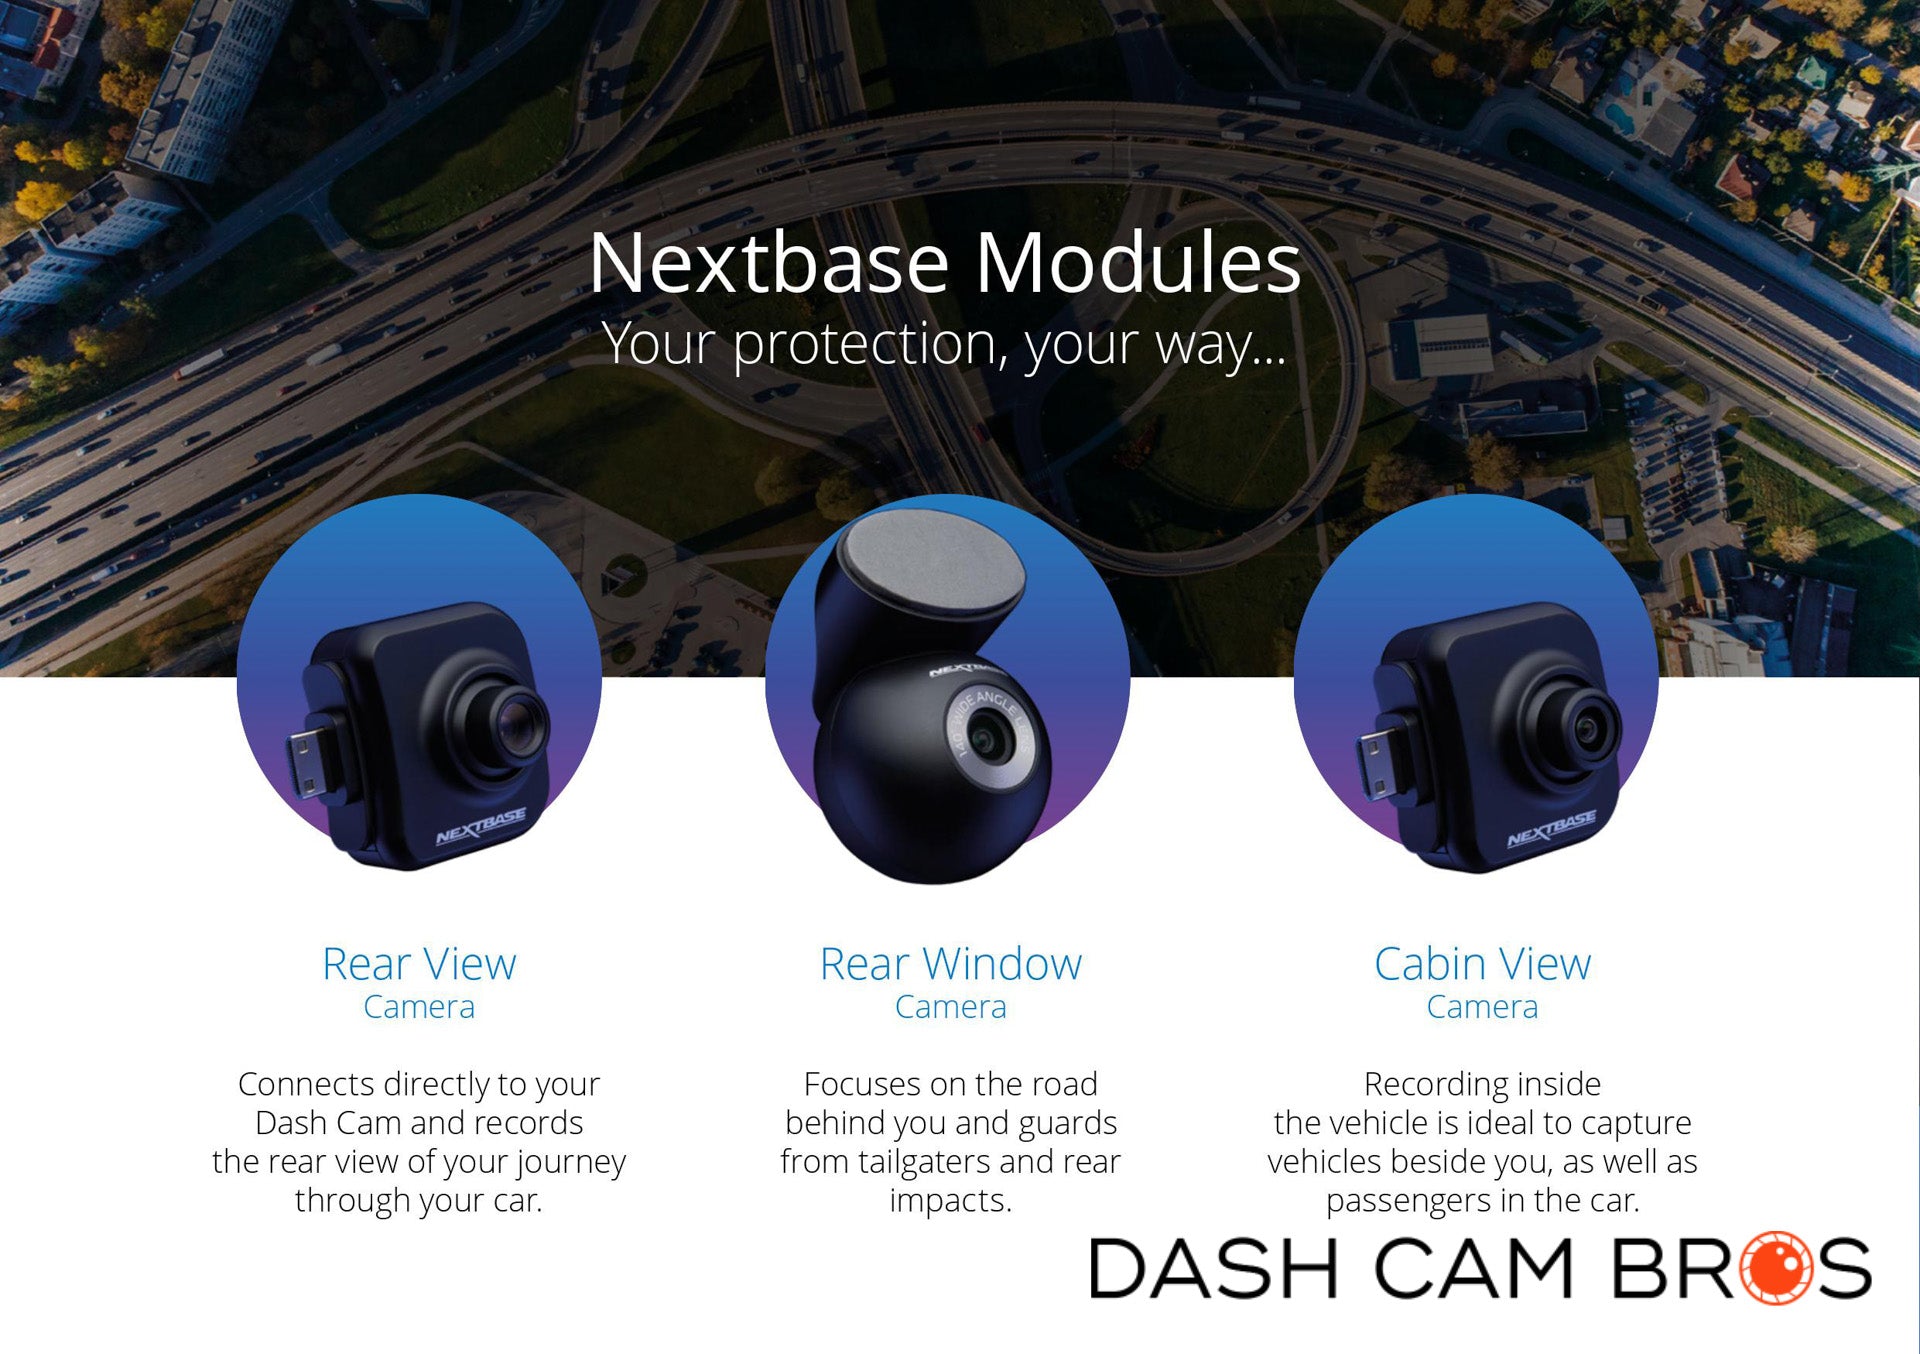 https://dashcambros.com/cdn/shop/products/DashcamBros.com-nextbase-422gw-dash-cam-features-benefits-12.jpg?v=1646943047